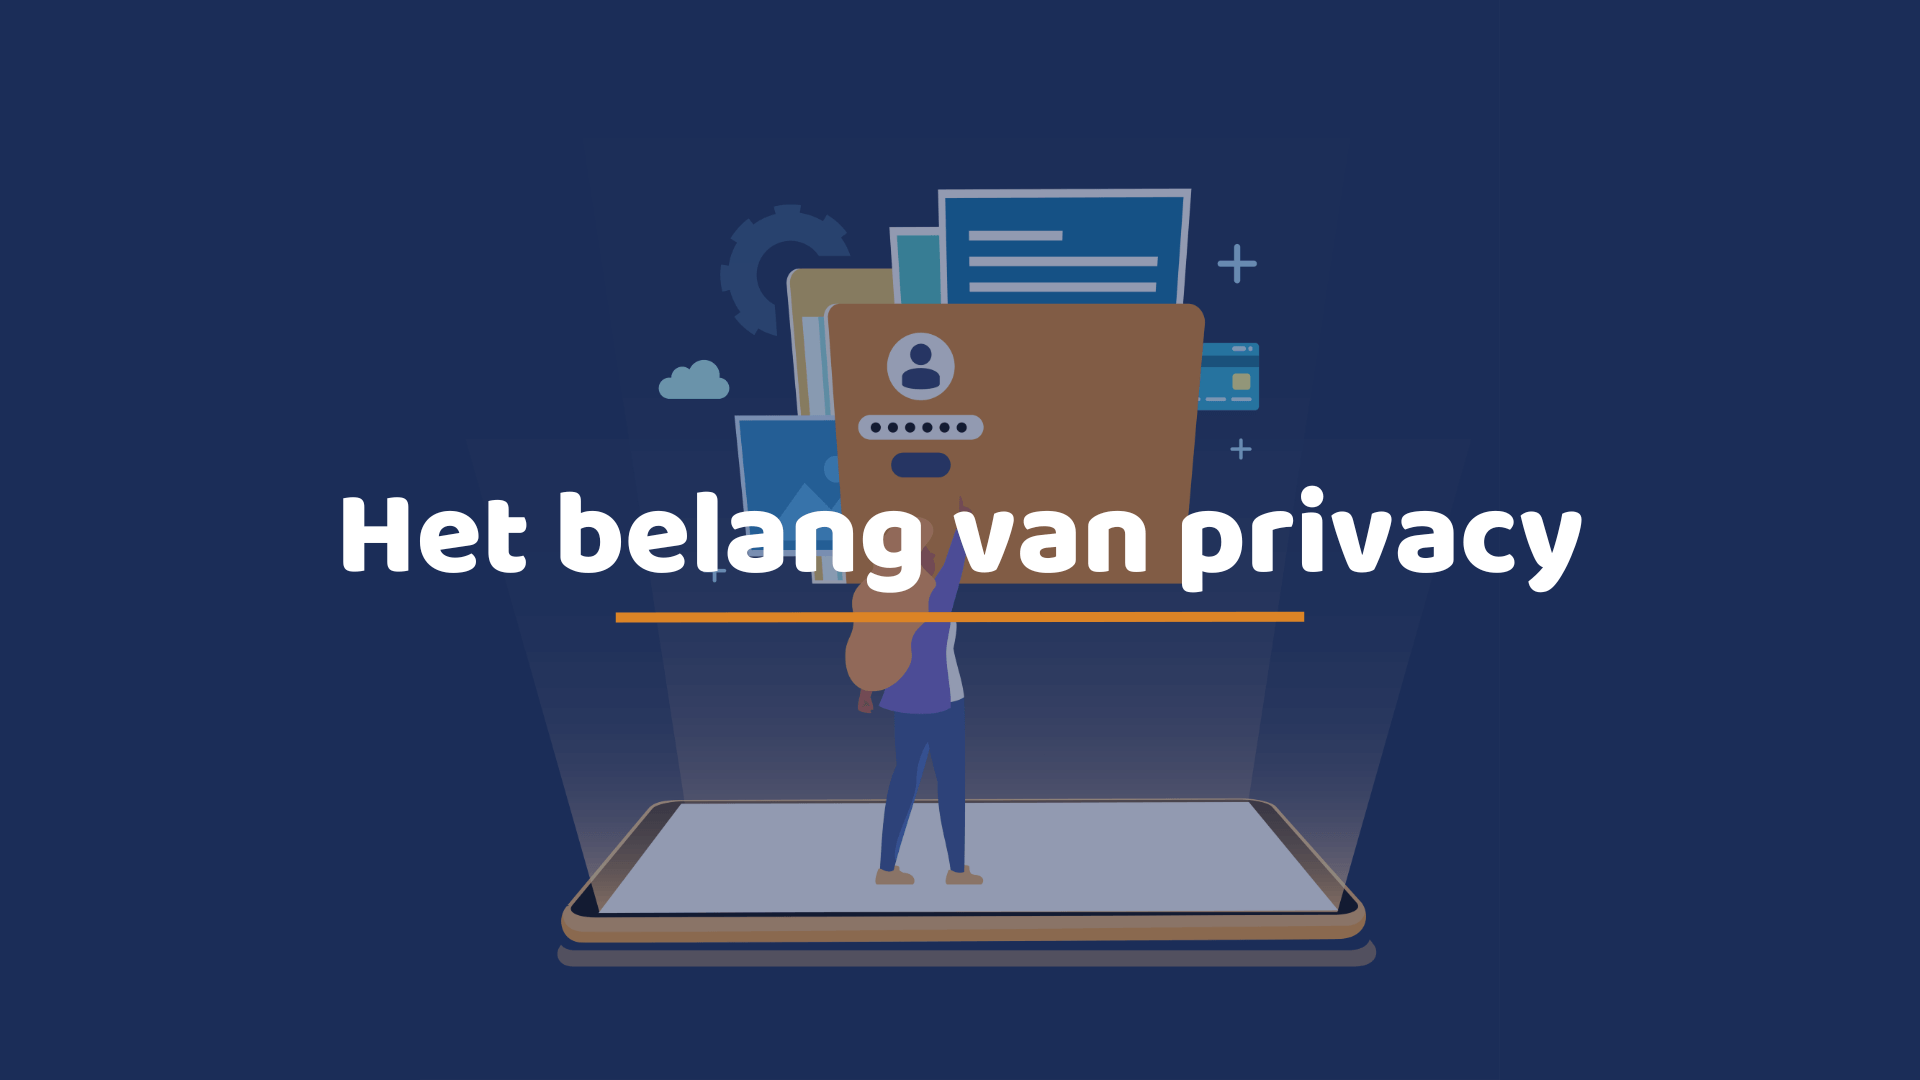 Titel: het belang van privacy